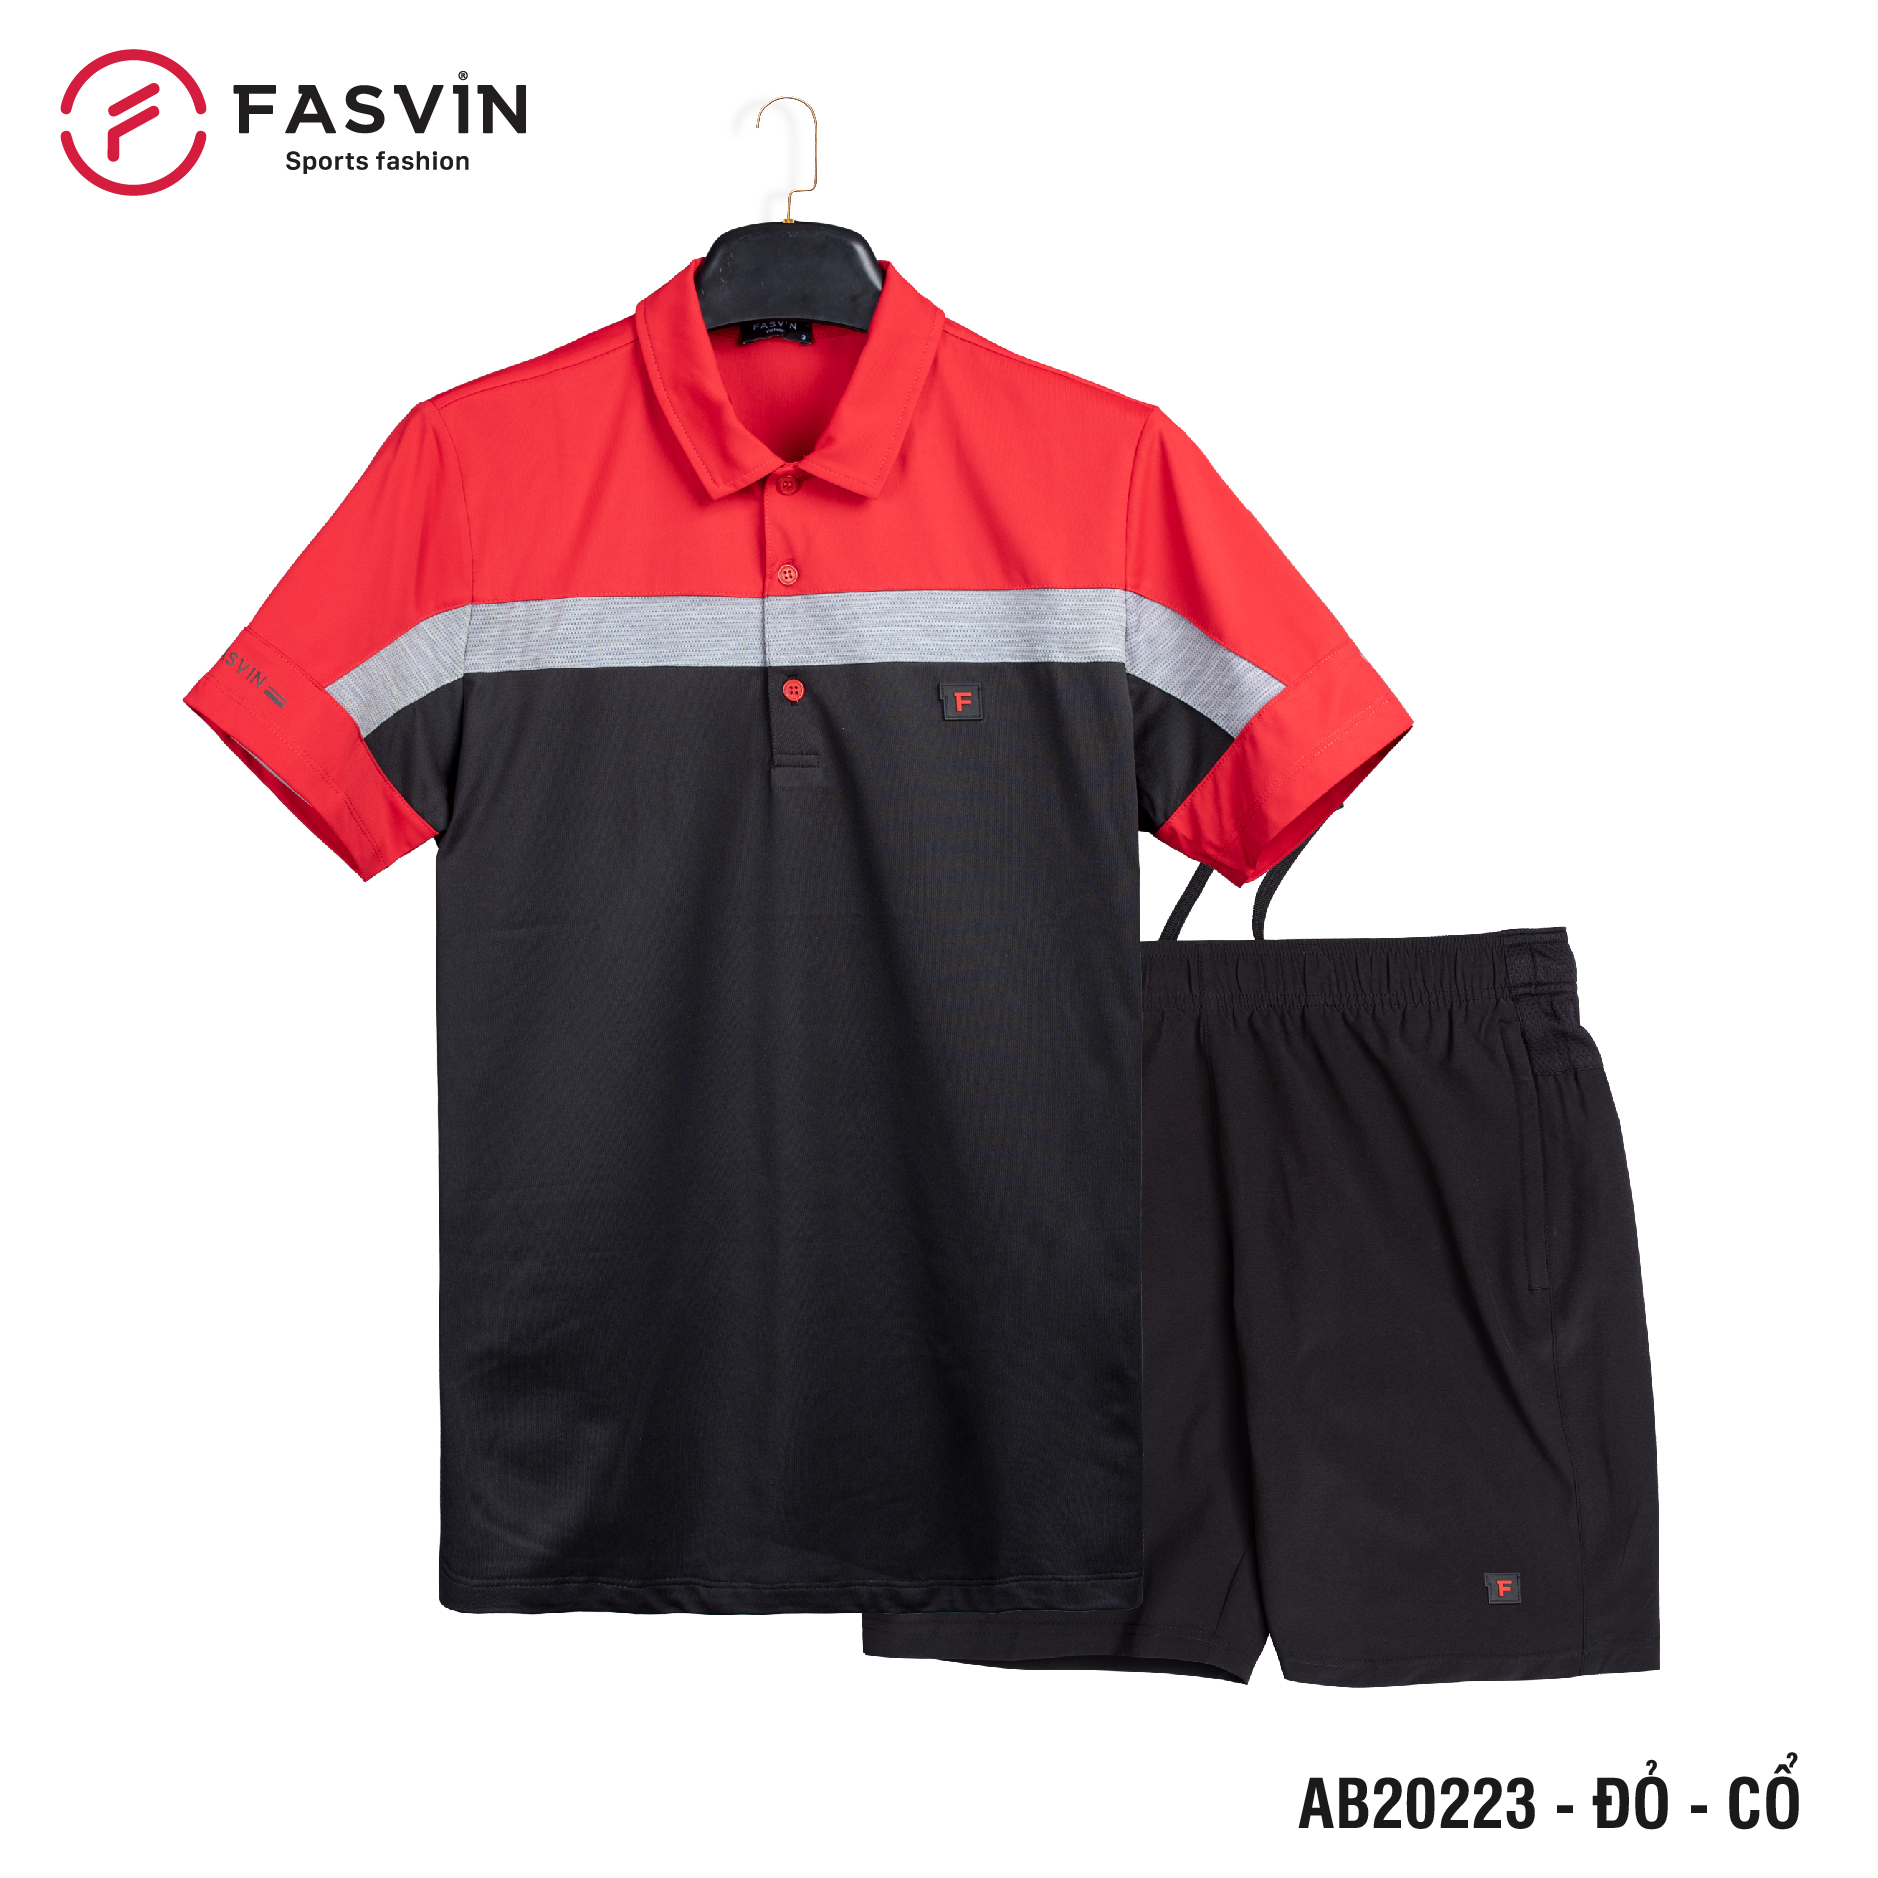 Bộ quần áo thể thao nam Fasvin AB20223.HN cộc tay cổ bẻ vải thể thao mềm nhẹ co giãn tốt